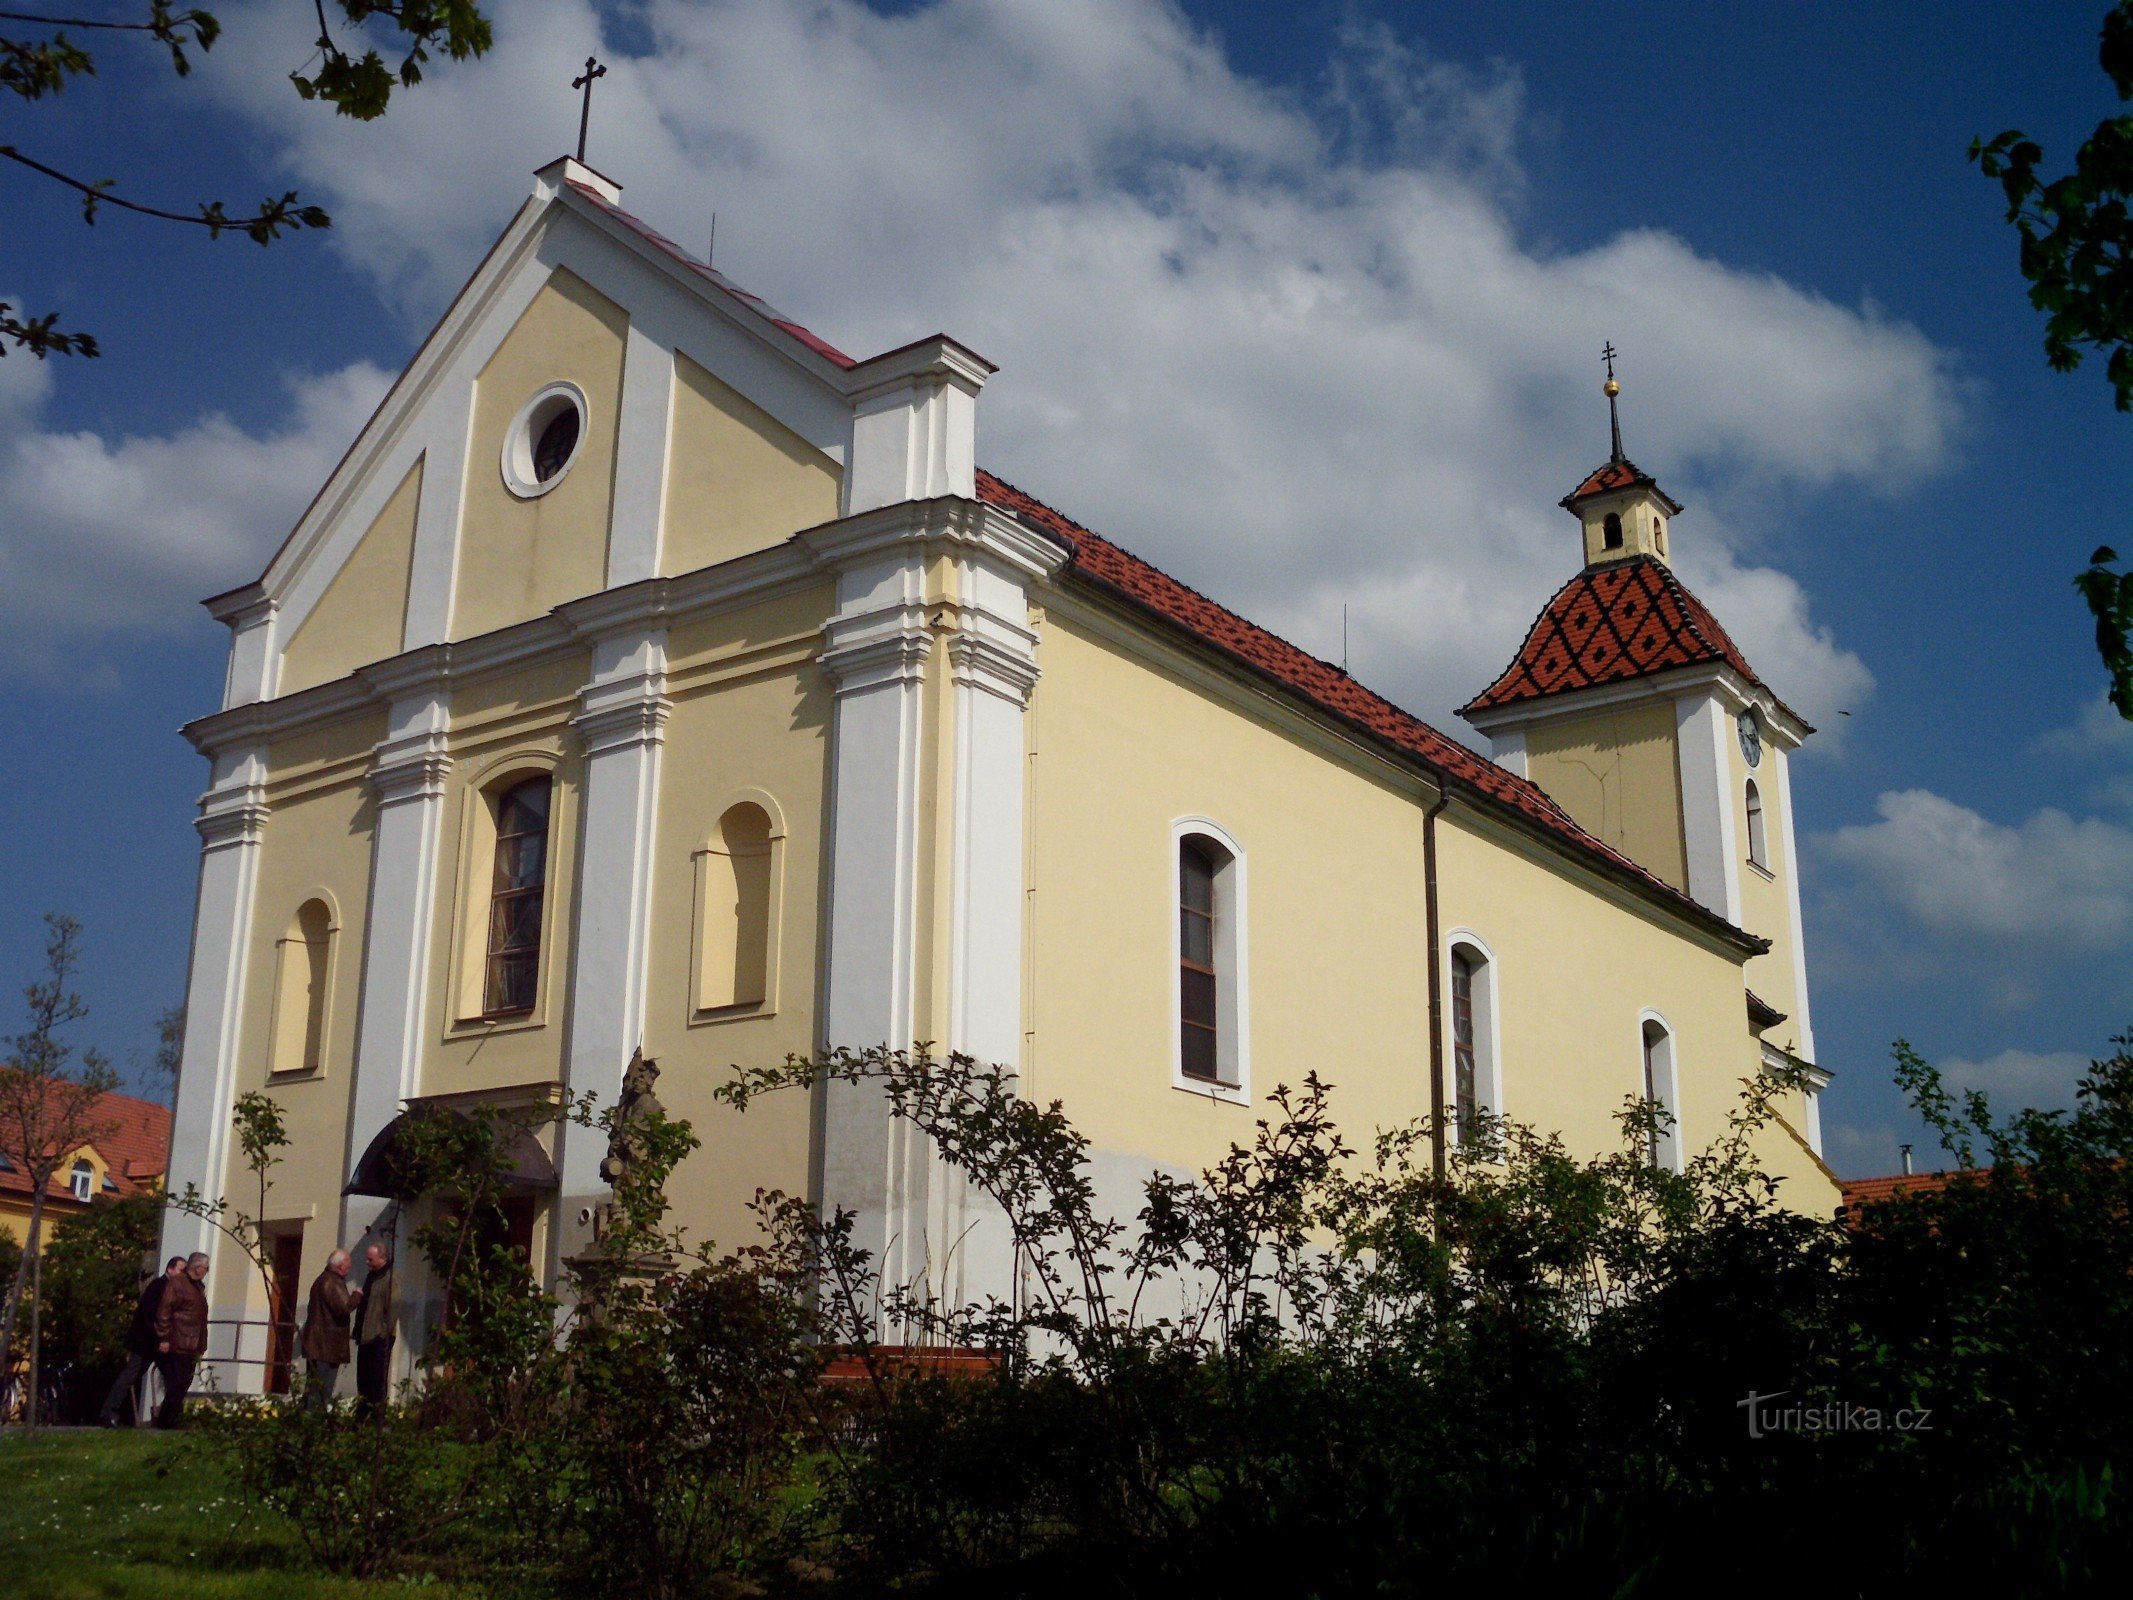 Kunovice (osoitteessa U. Hradiště) - Pyhän Nikolauksen kirkko Pietari ja Paavali